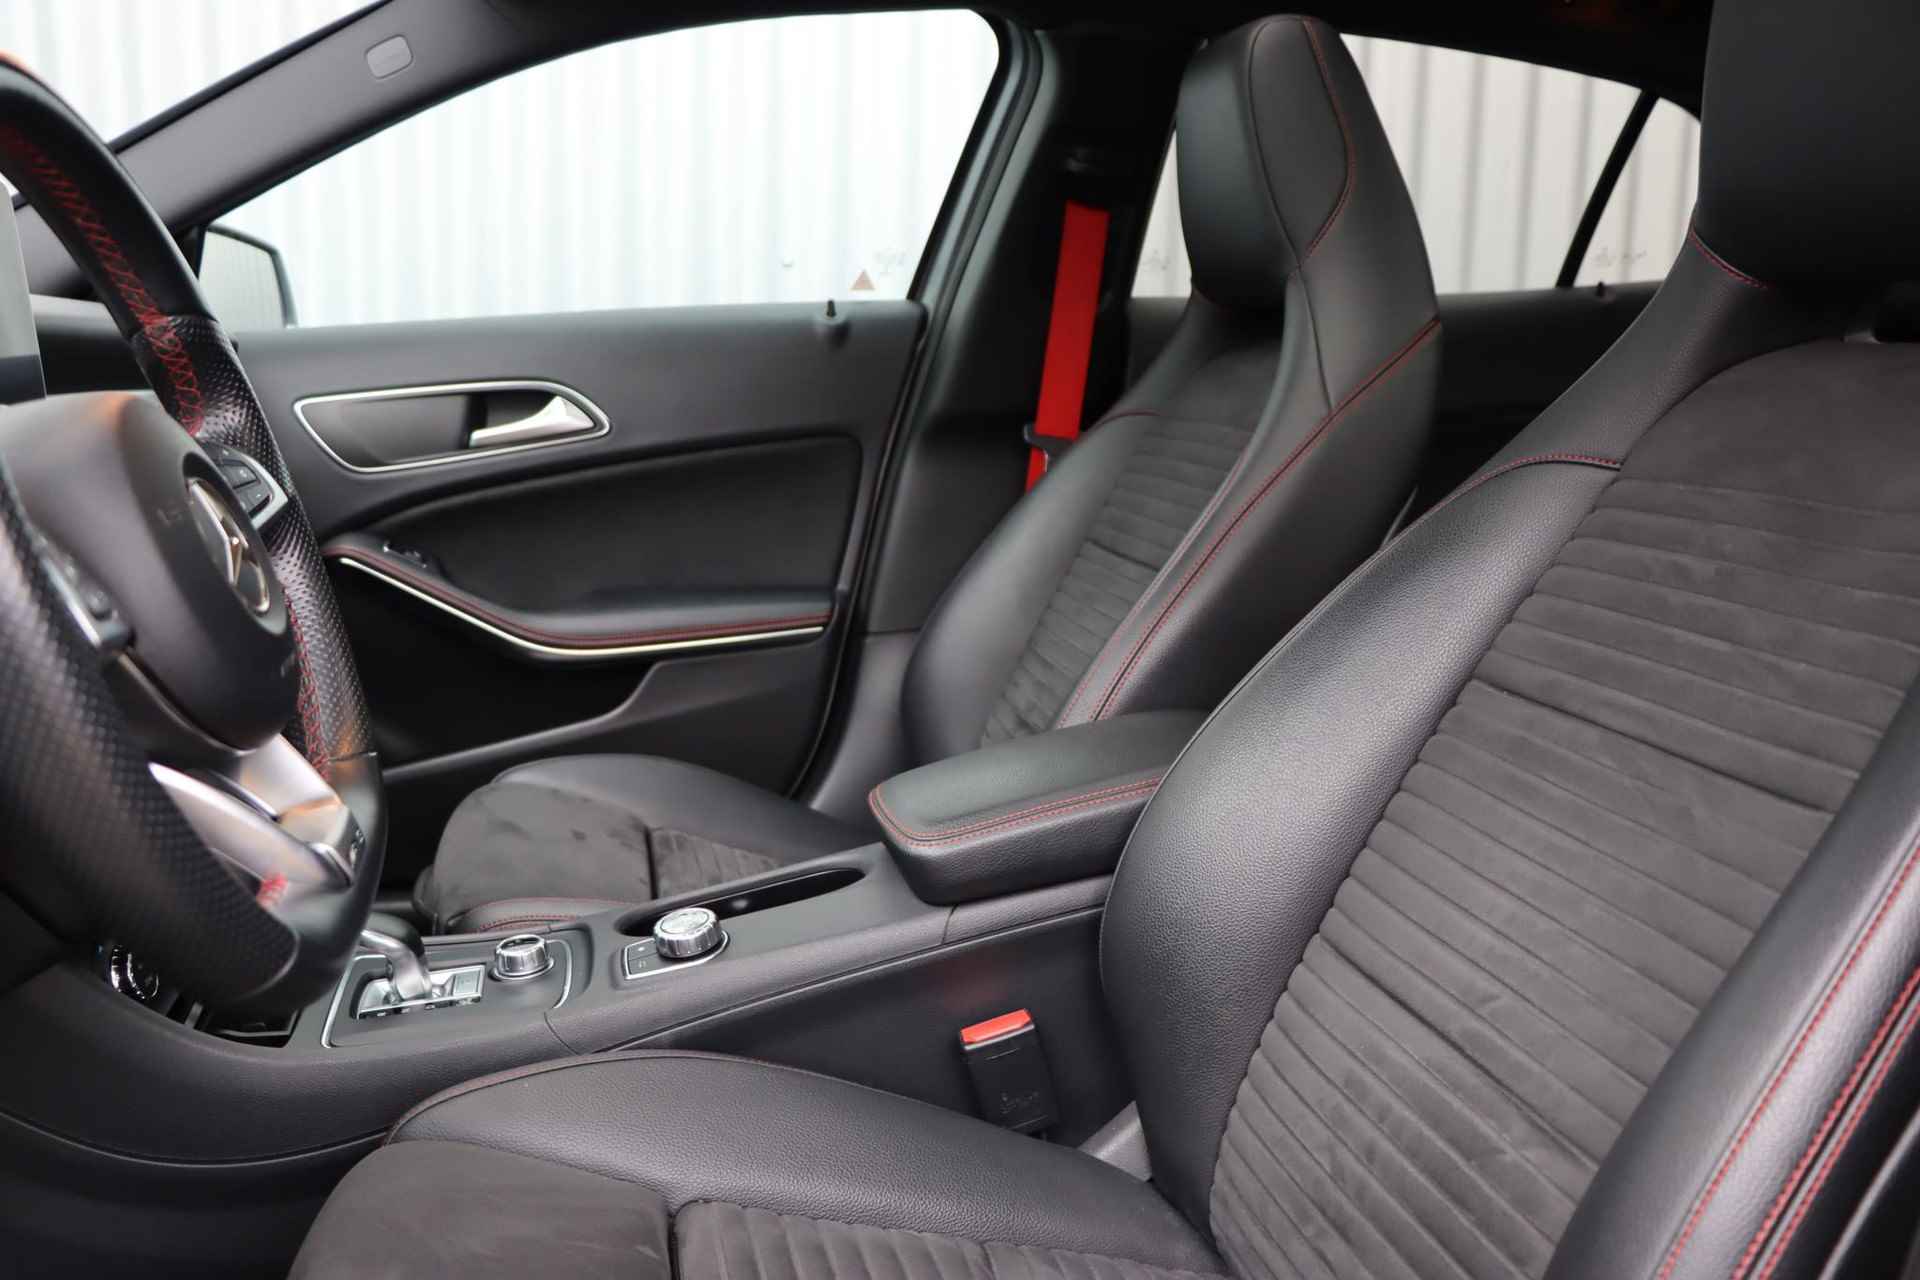 Mercedes-Benz GLA-klasse AMG 45 4MATIC | Panorama dak | Achteruitrijcamera | elektrische bestuurdersstoel | LED koplampen | elektronische achterklep | - 10/38